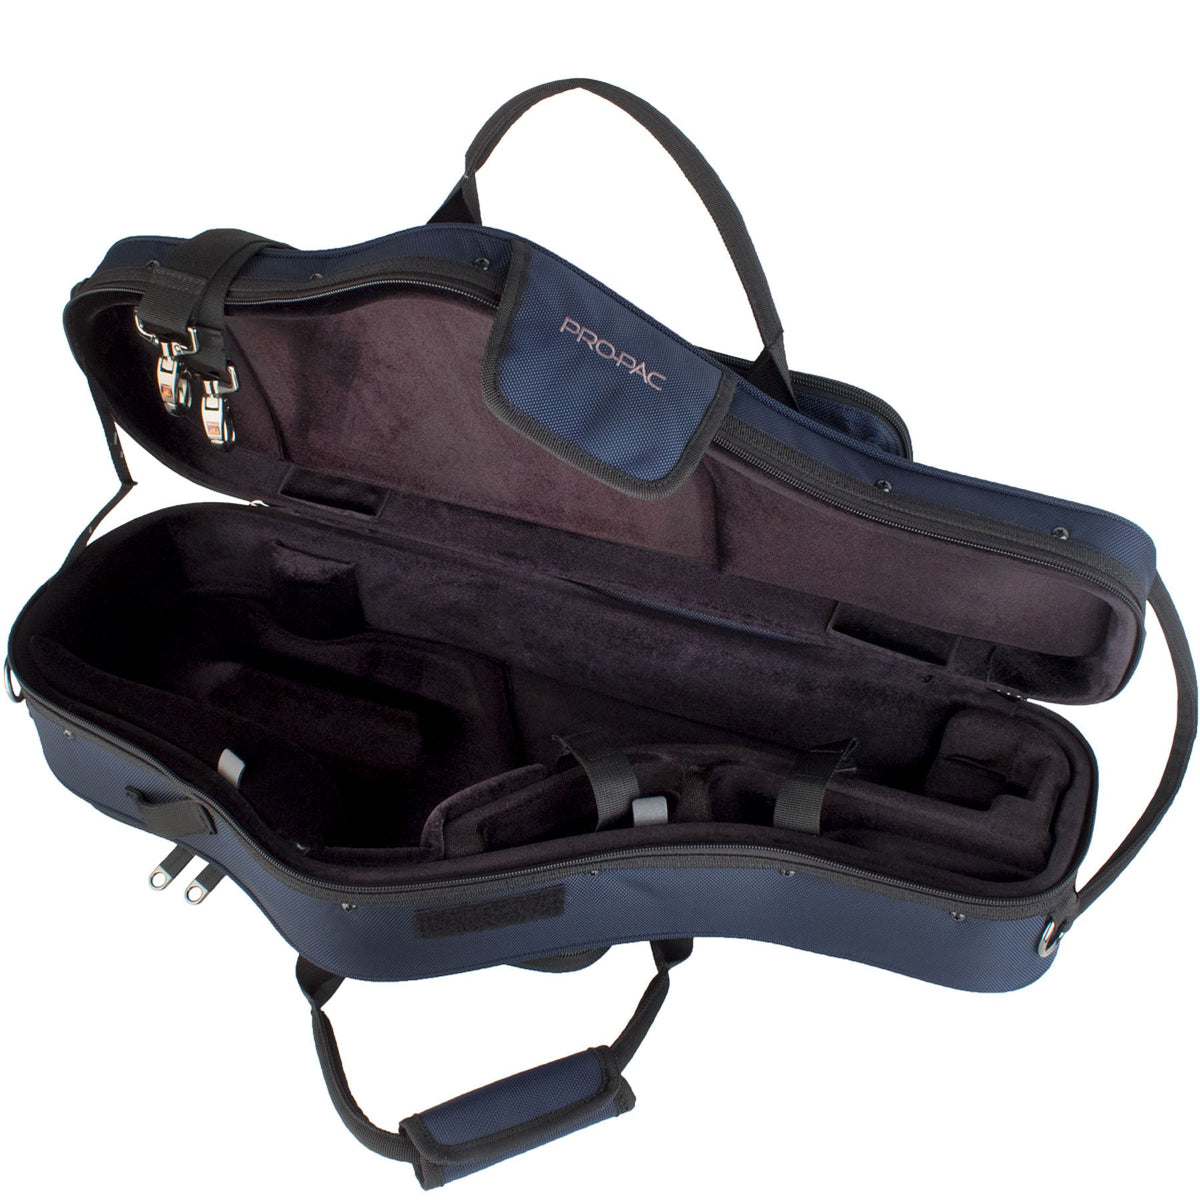 Protec - Alto Saxophone PRO PAC Case (Contoured)-Accessories-Protec-Music Elements